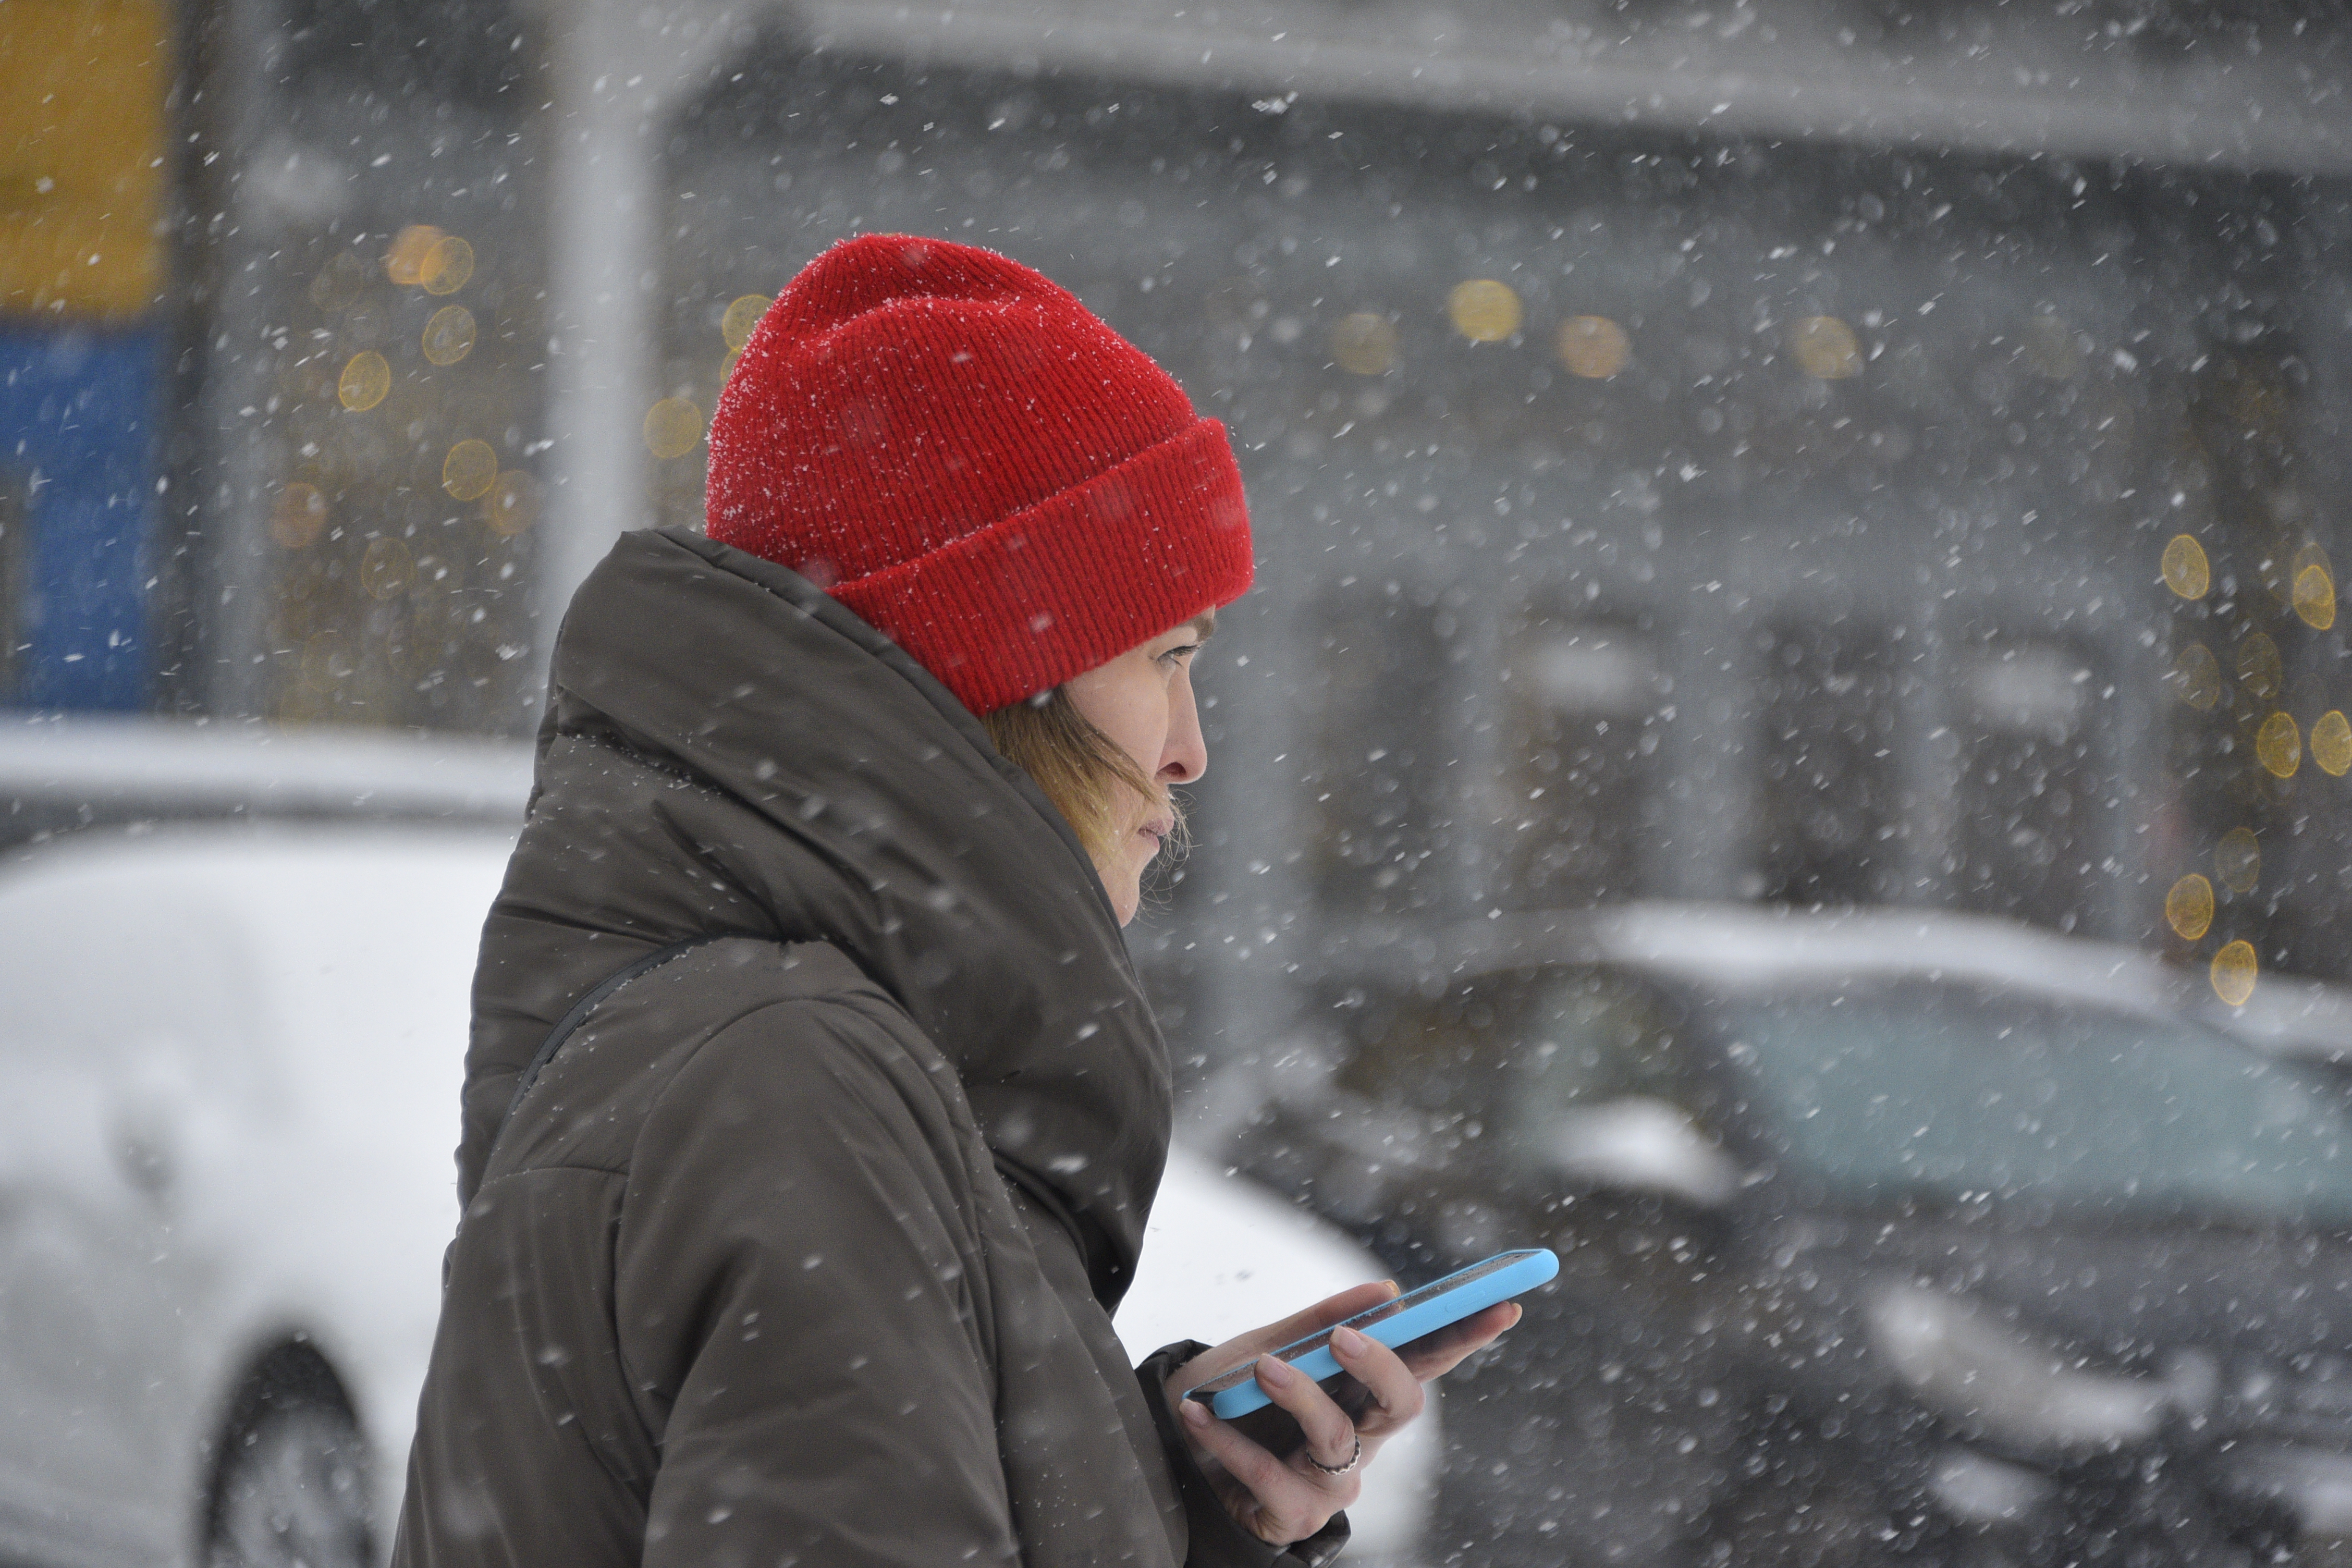 Росгидромет: Четверг в Москве может стать самым холодным днем с начала зимы